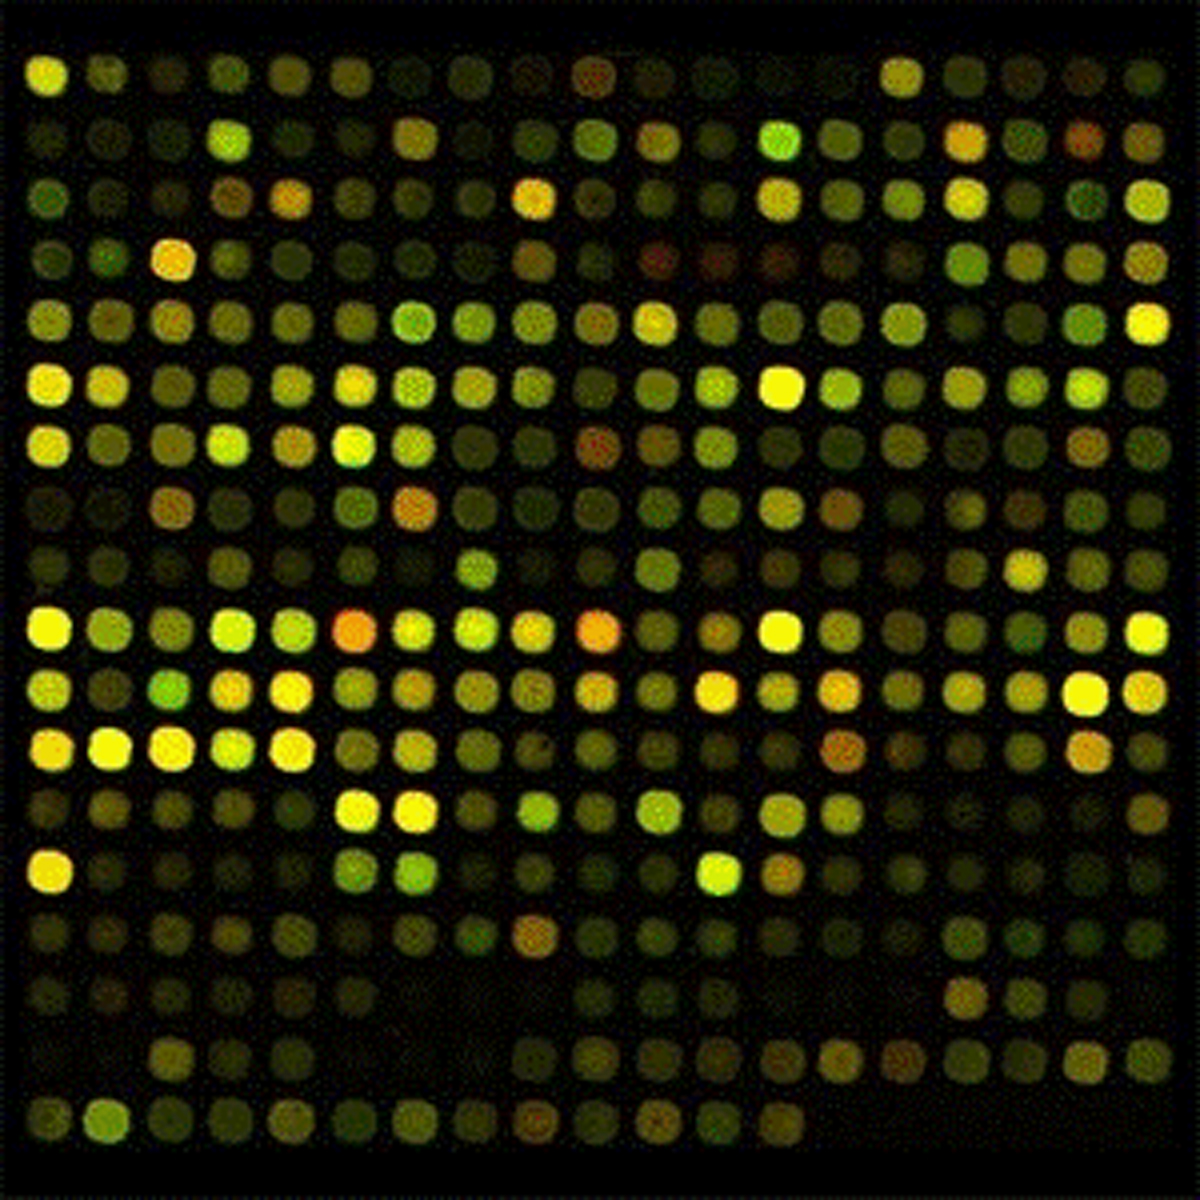 Imagen: Los investigadores utilizaron microarrays para medir simultáneamente las concentraciones de cientos de moléculas e identificar los patrones de expresión de microARN pertinentes que podrían ayudar a diagnosticar el cáncer de mama de manera no invasiva (Fotografía cortesía del Centro Médico Universitario de Friburgo).